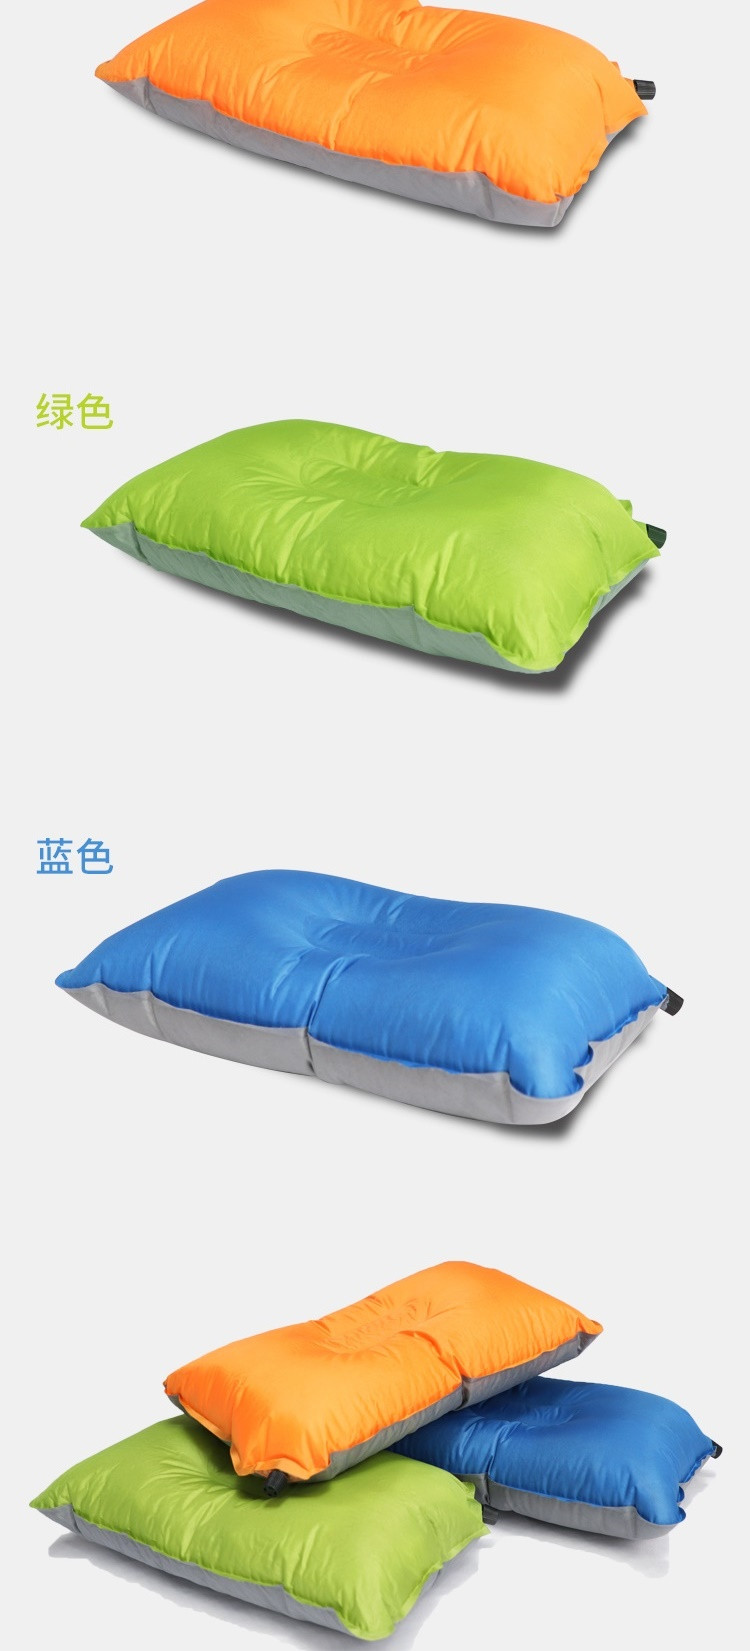 狼行者 自动充气枕头LXZ-4030 旅行枕 便携舒适午睡露营睡枕